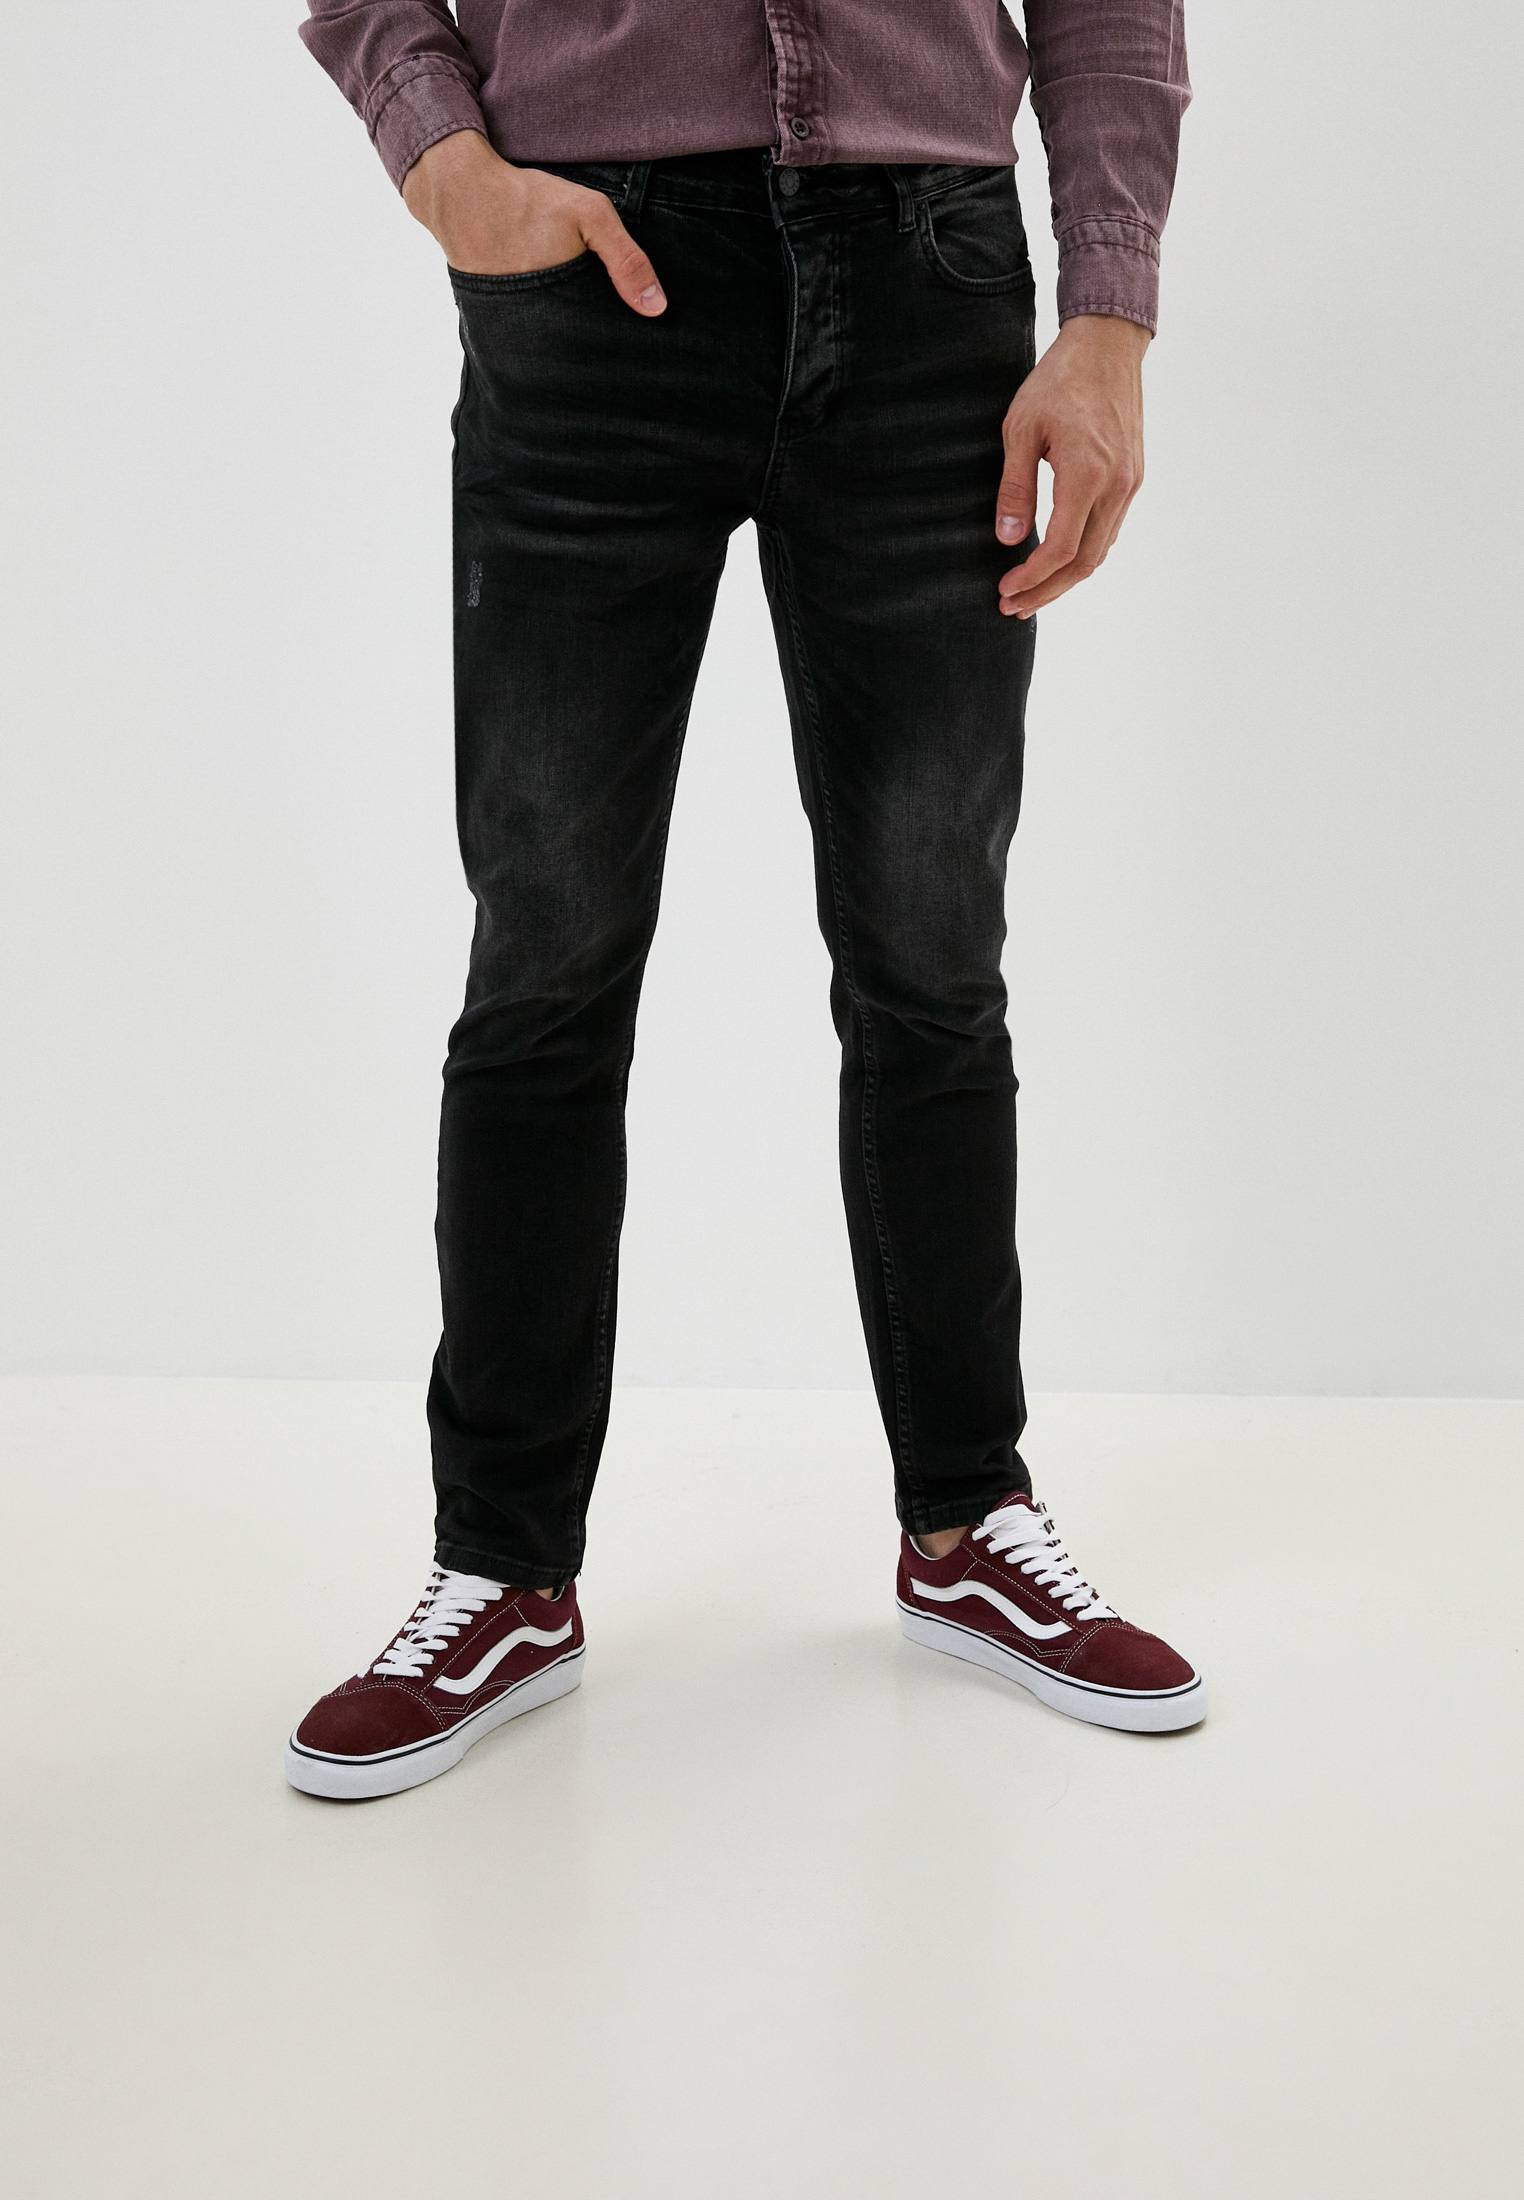 Зауженные джинсы Basics & More BA388808: изображение 1